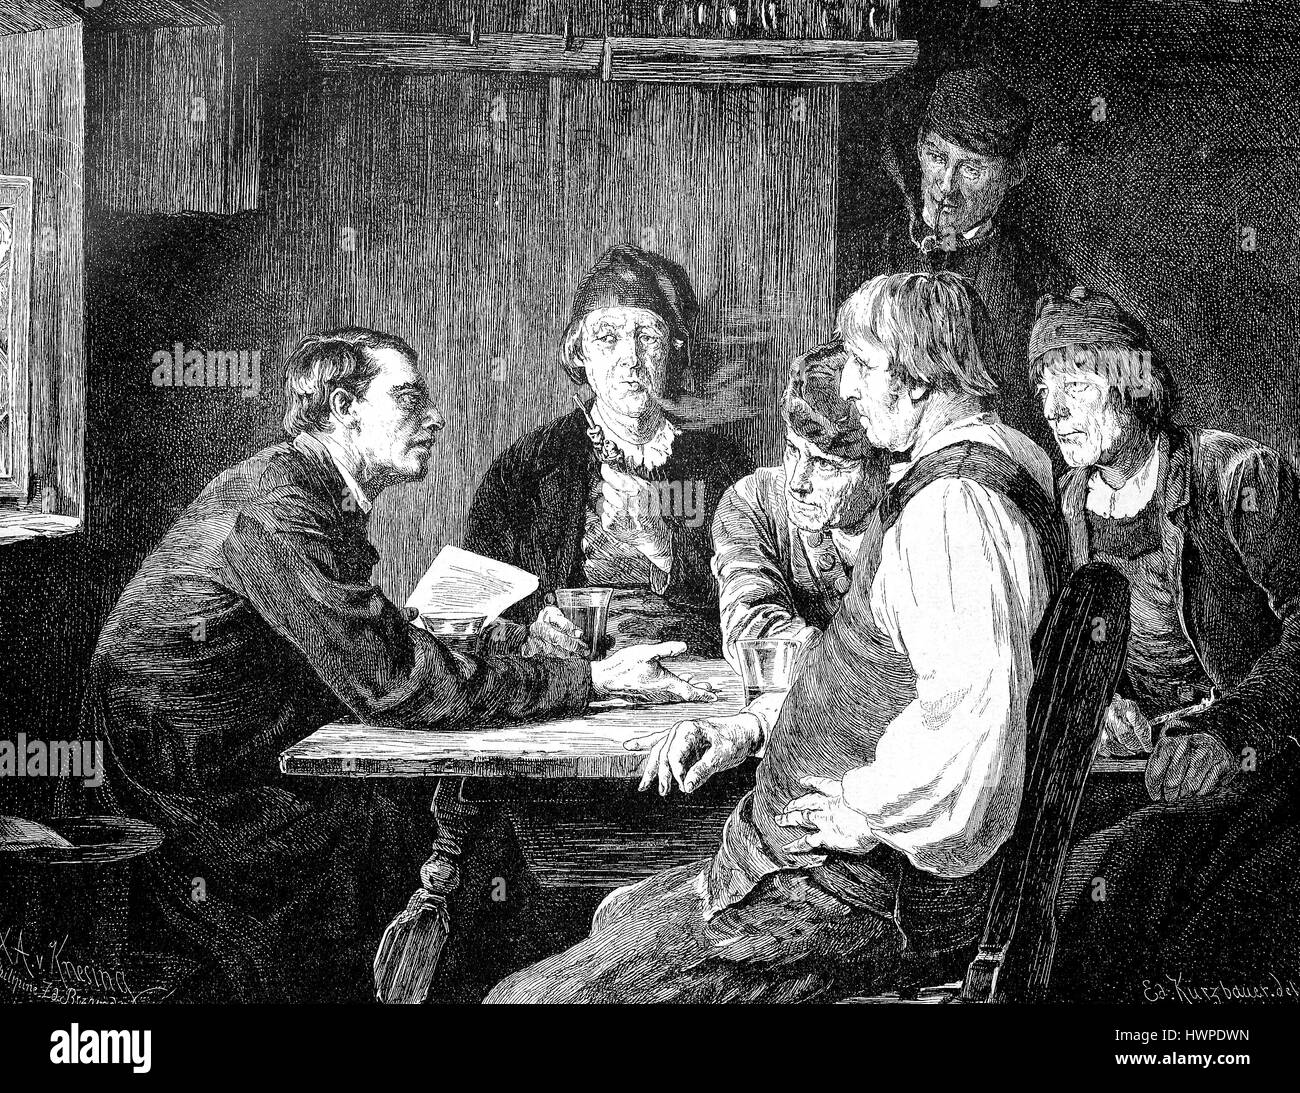 Discuter du groupe, six hommes, plus une lettre du roi, dans une auberge, 1875, la reproduction d'une gravure sur bois originale de l'année 1882, l'amélioration numérique Banque D'Images